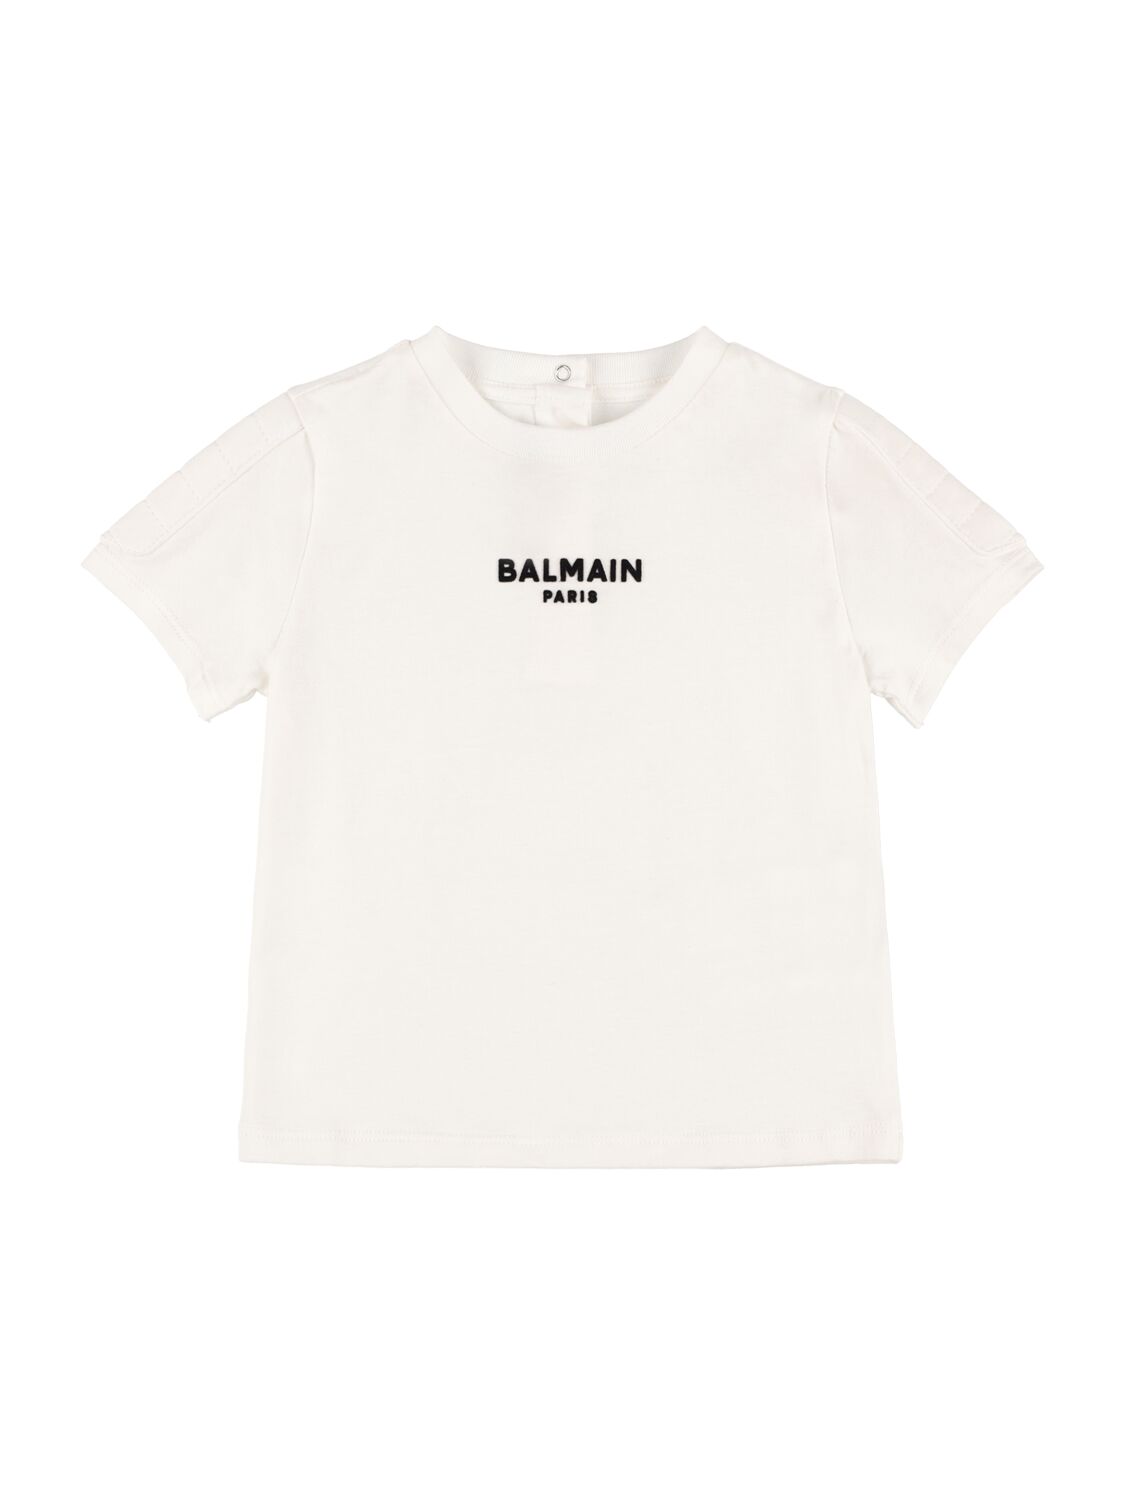 Balmain Babies' Organic Cotton Jersey T-shirt In White